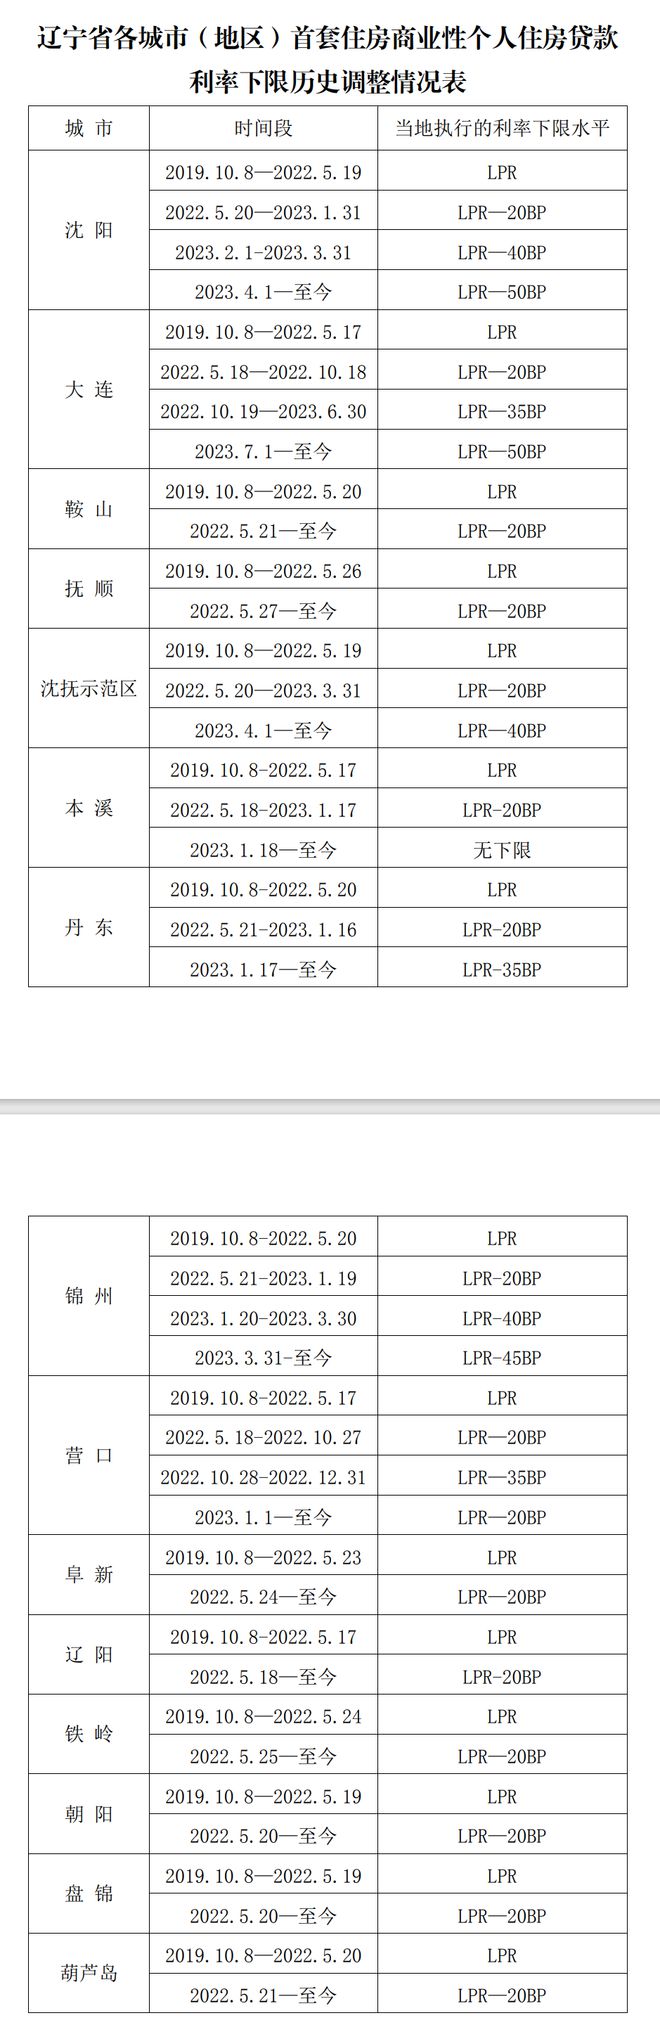 辽宁：沈阳2023年4月至今、大连2023年7月至今首套房贷执行的利率下限水平为LPR—50BP